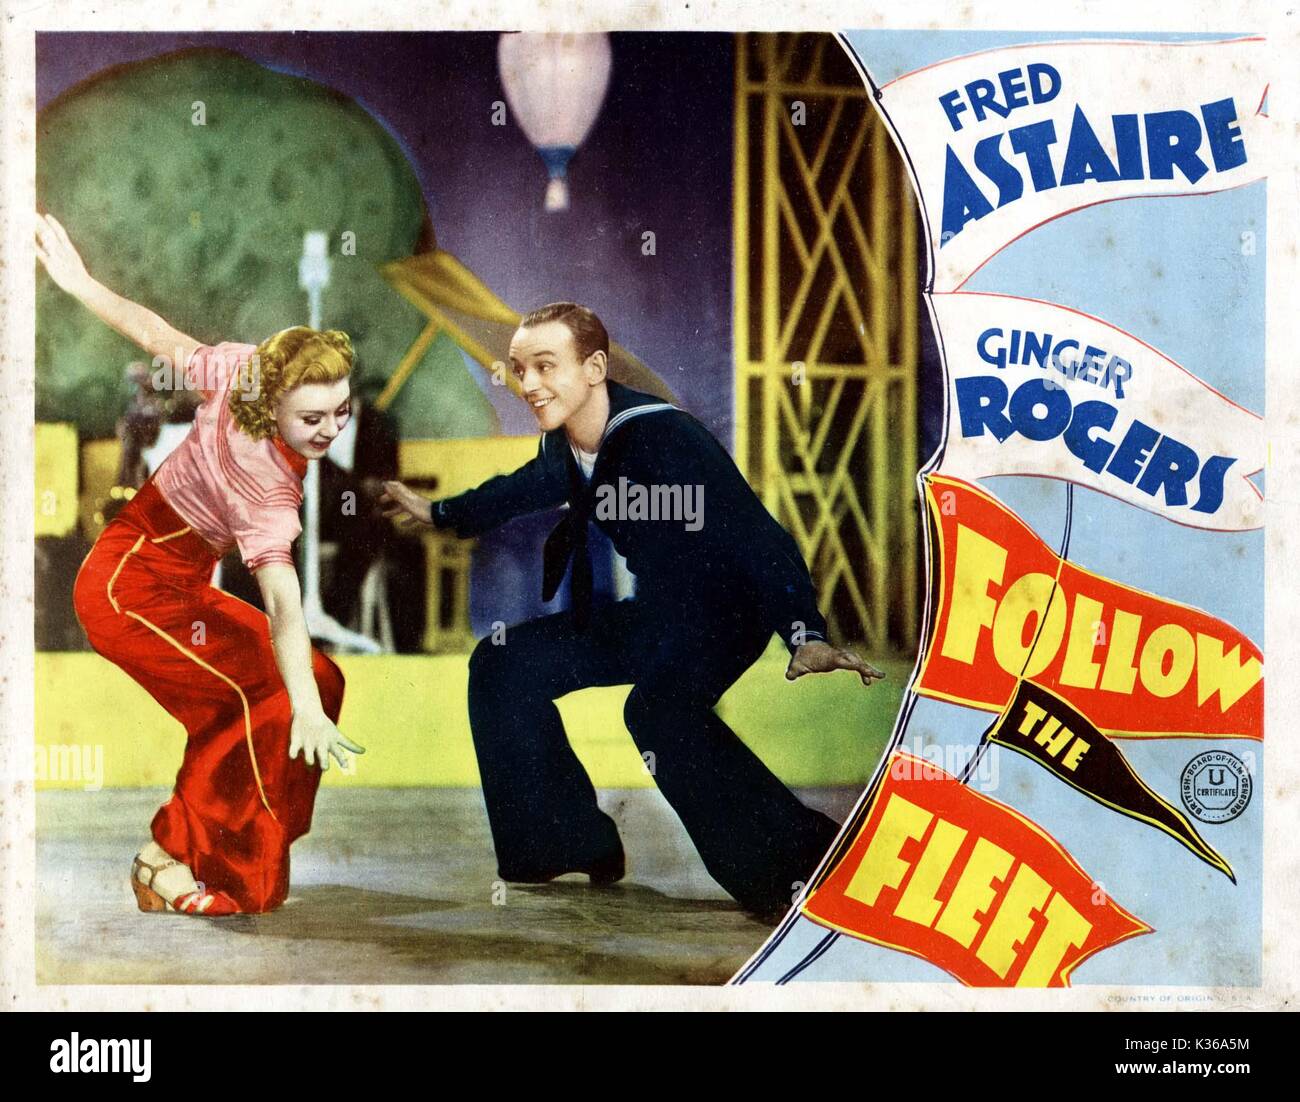 Befolgen Sie die flotte Ginger Rogers und Fred Astaire lobby Card von der Ronald Grant Archiv Datum: 1936 Stockfoto